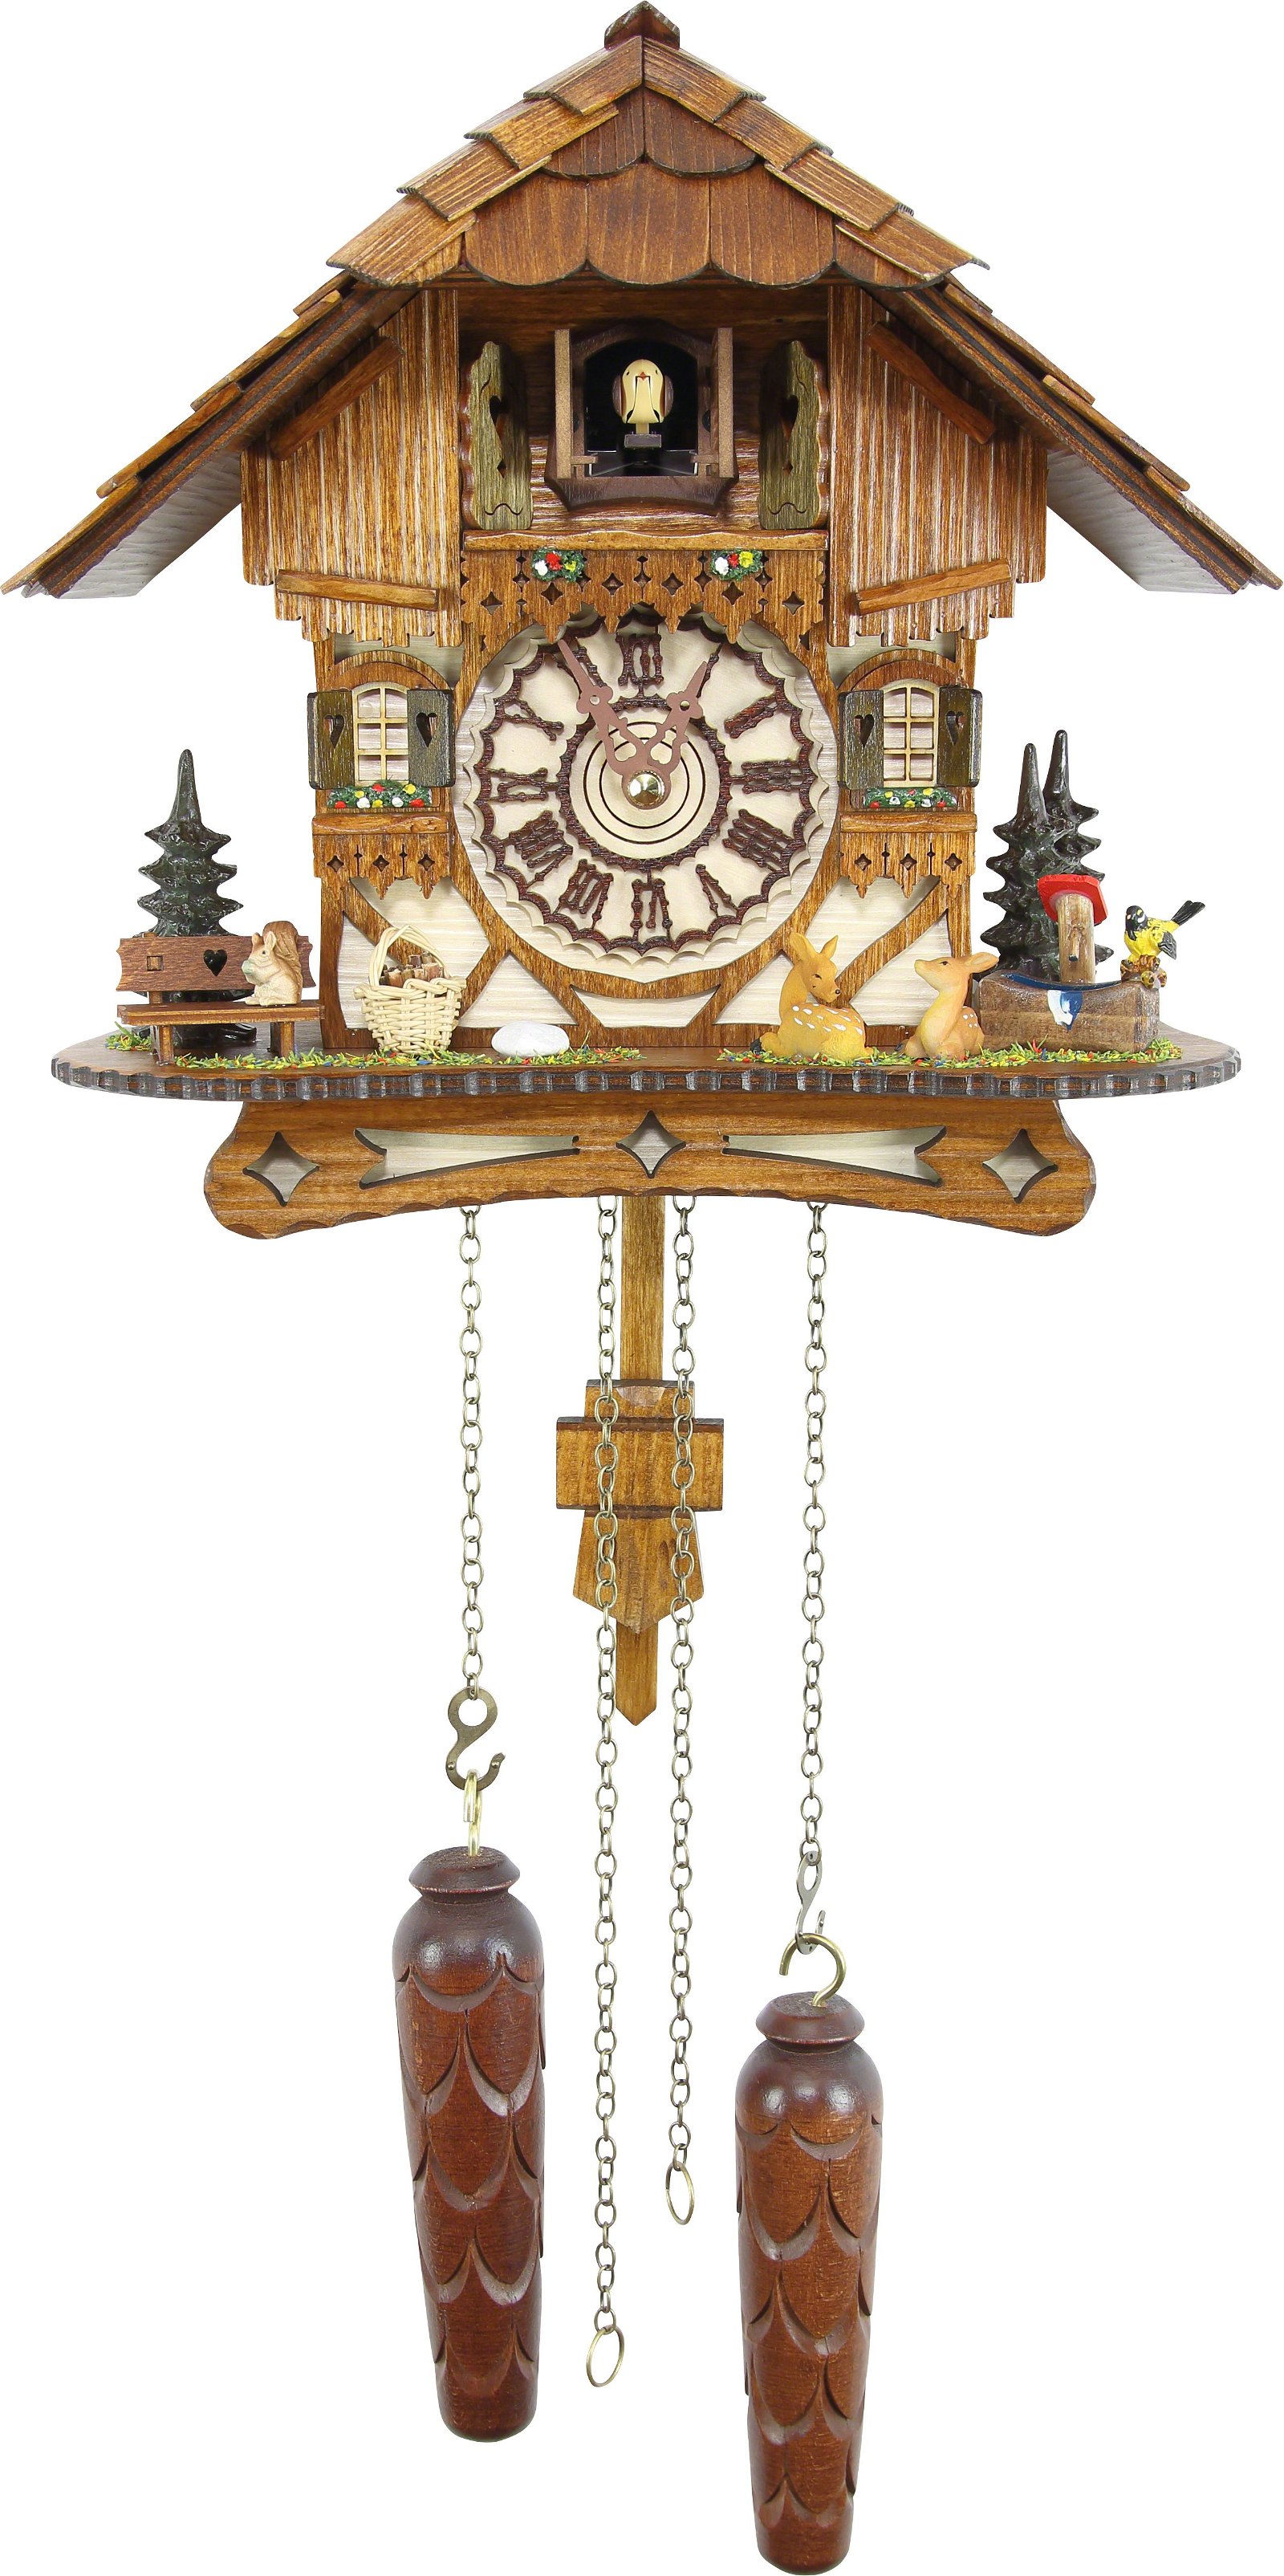 Chalet Hermle Heinrich Chalet Cuckoo Clock with St Bernard 